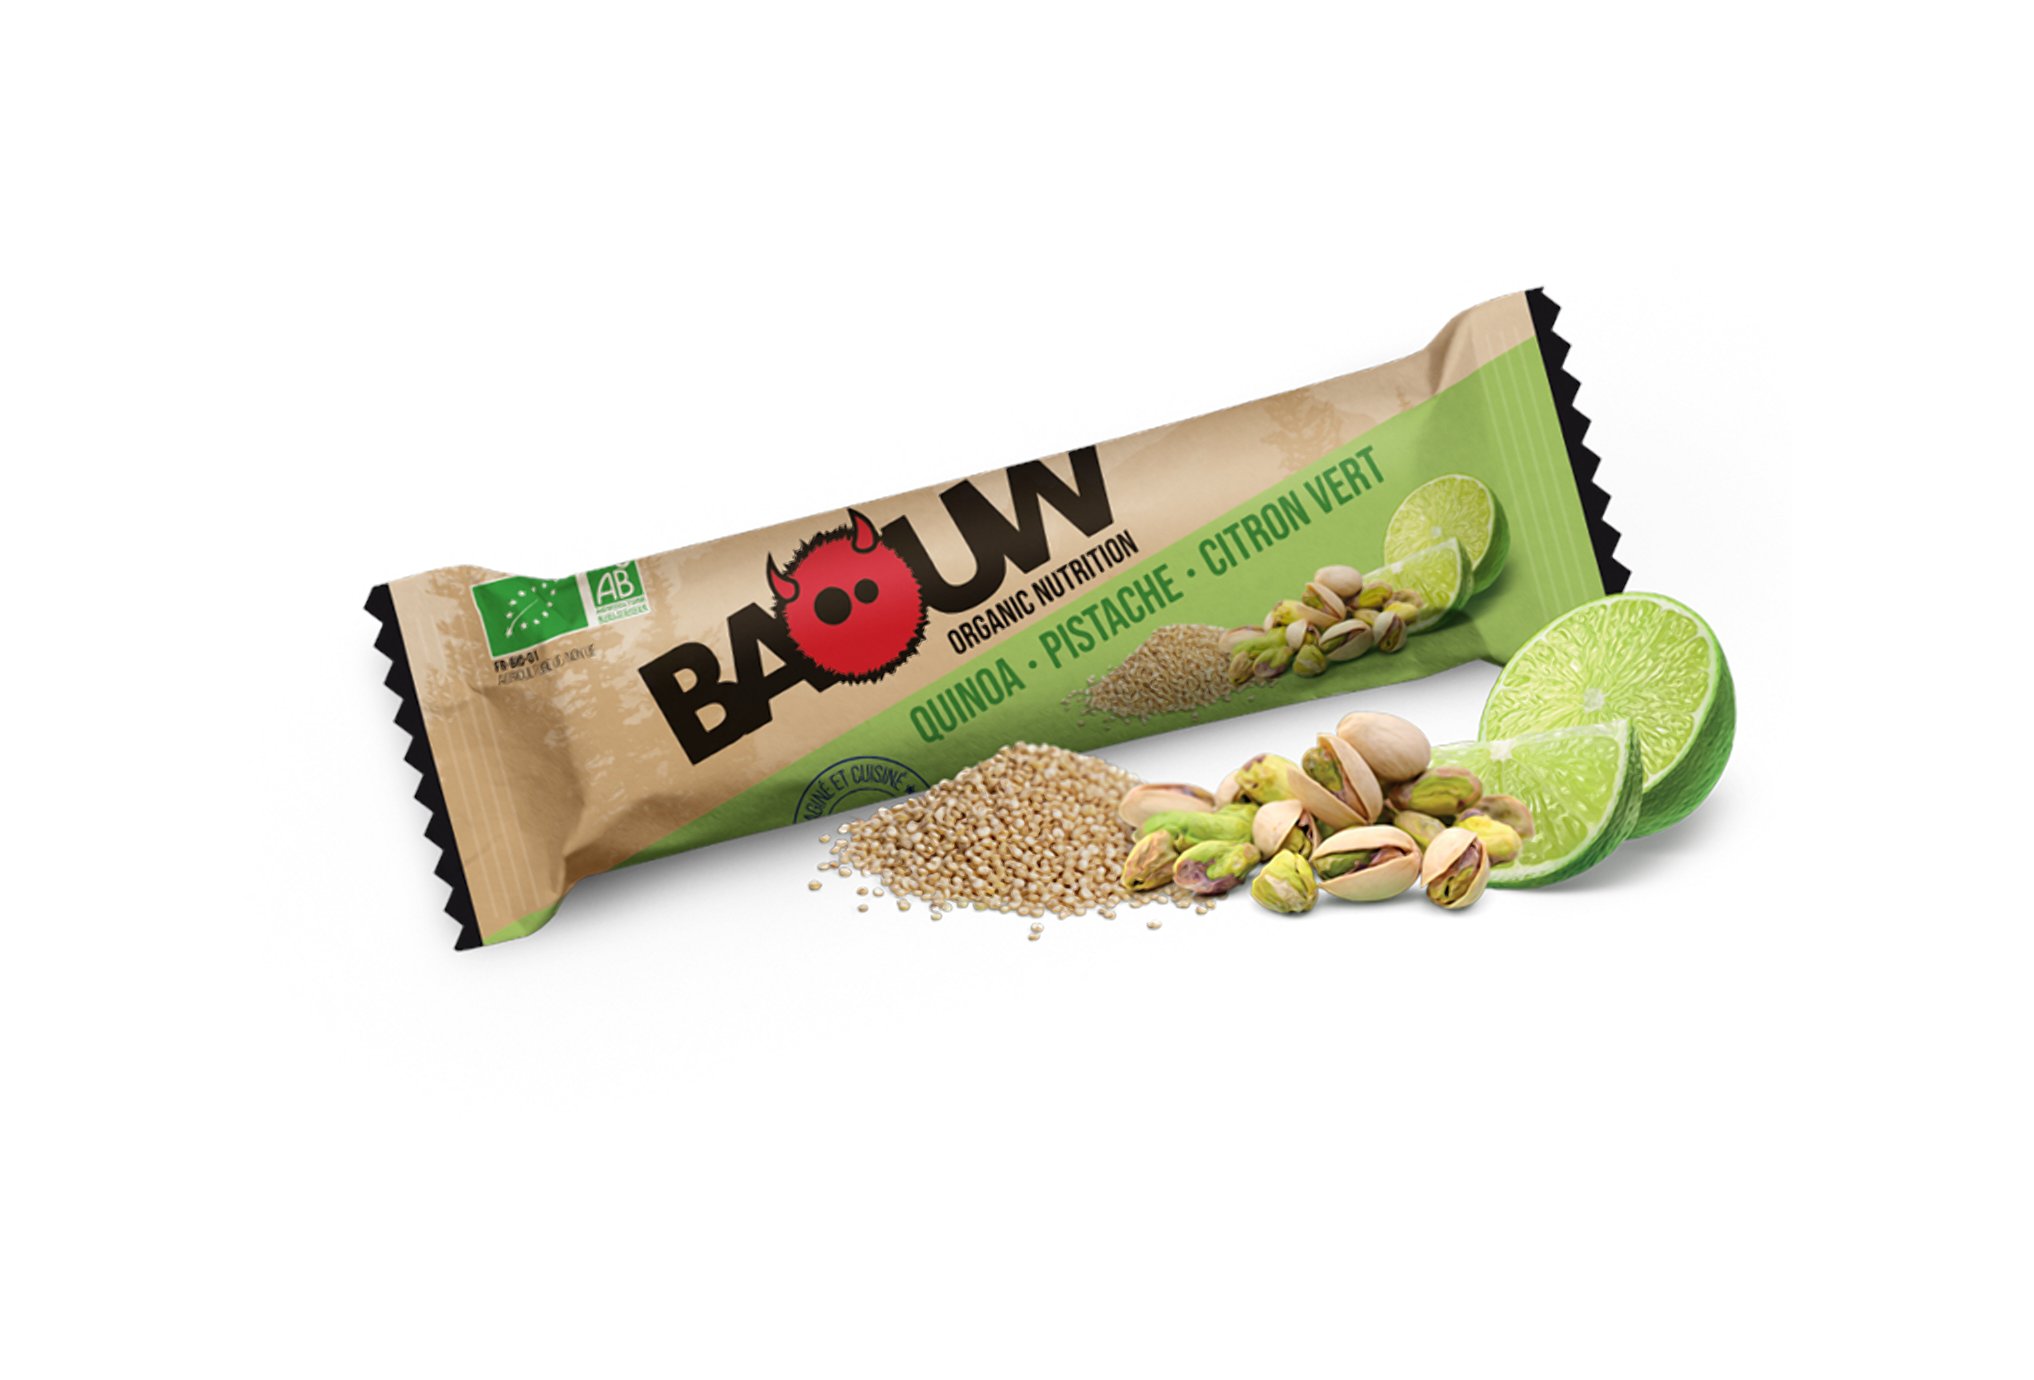 Baouw Barre nutritionnelle bio - Quinoa - Pistache - Citron vert Diététique Barres